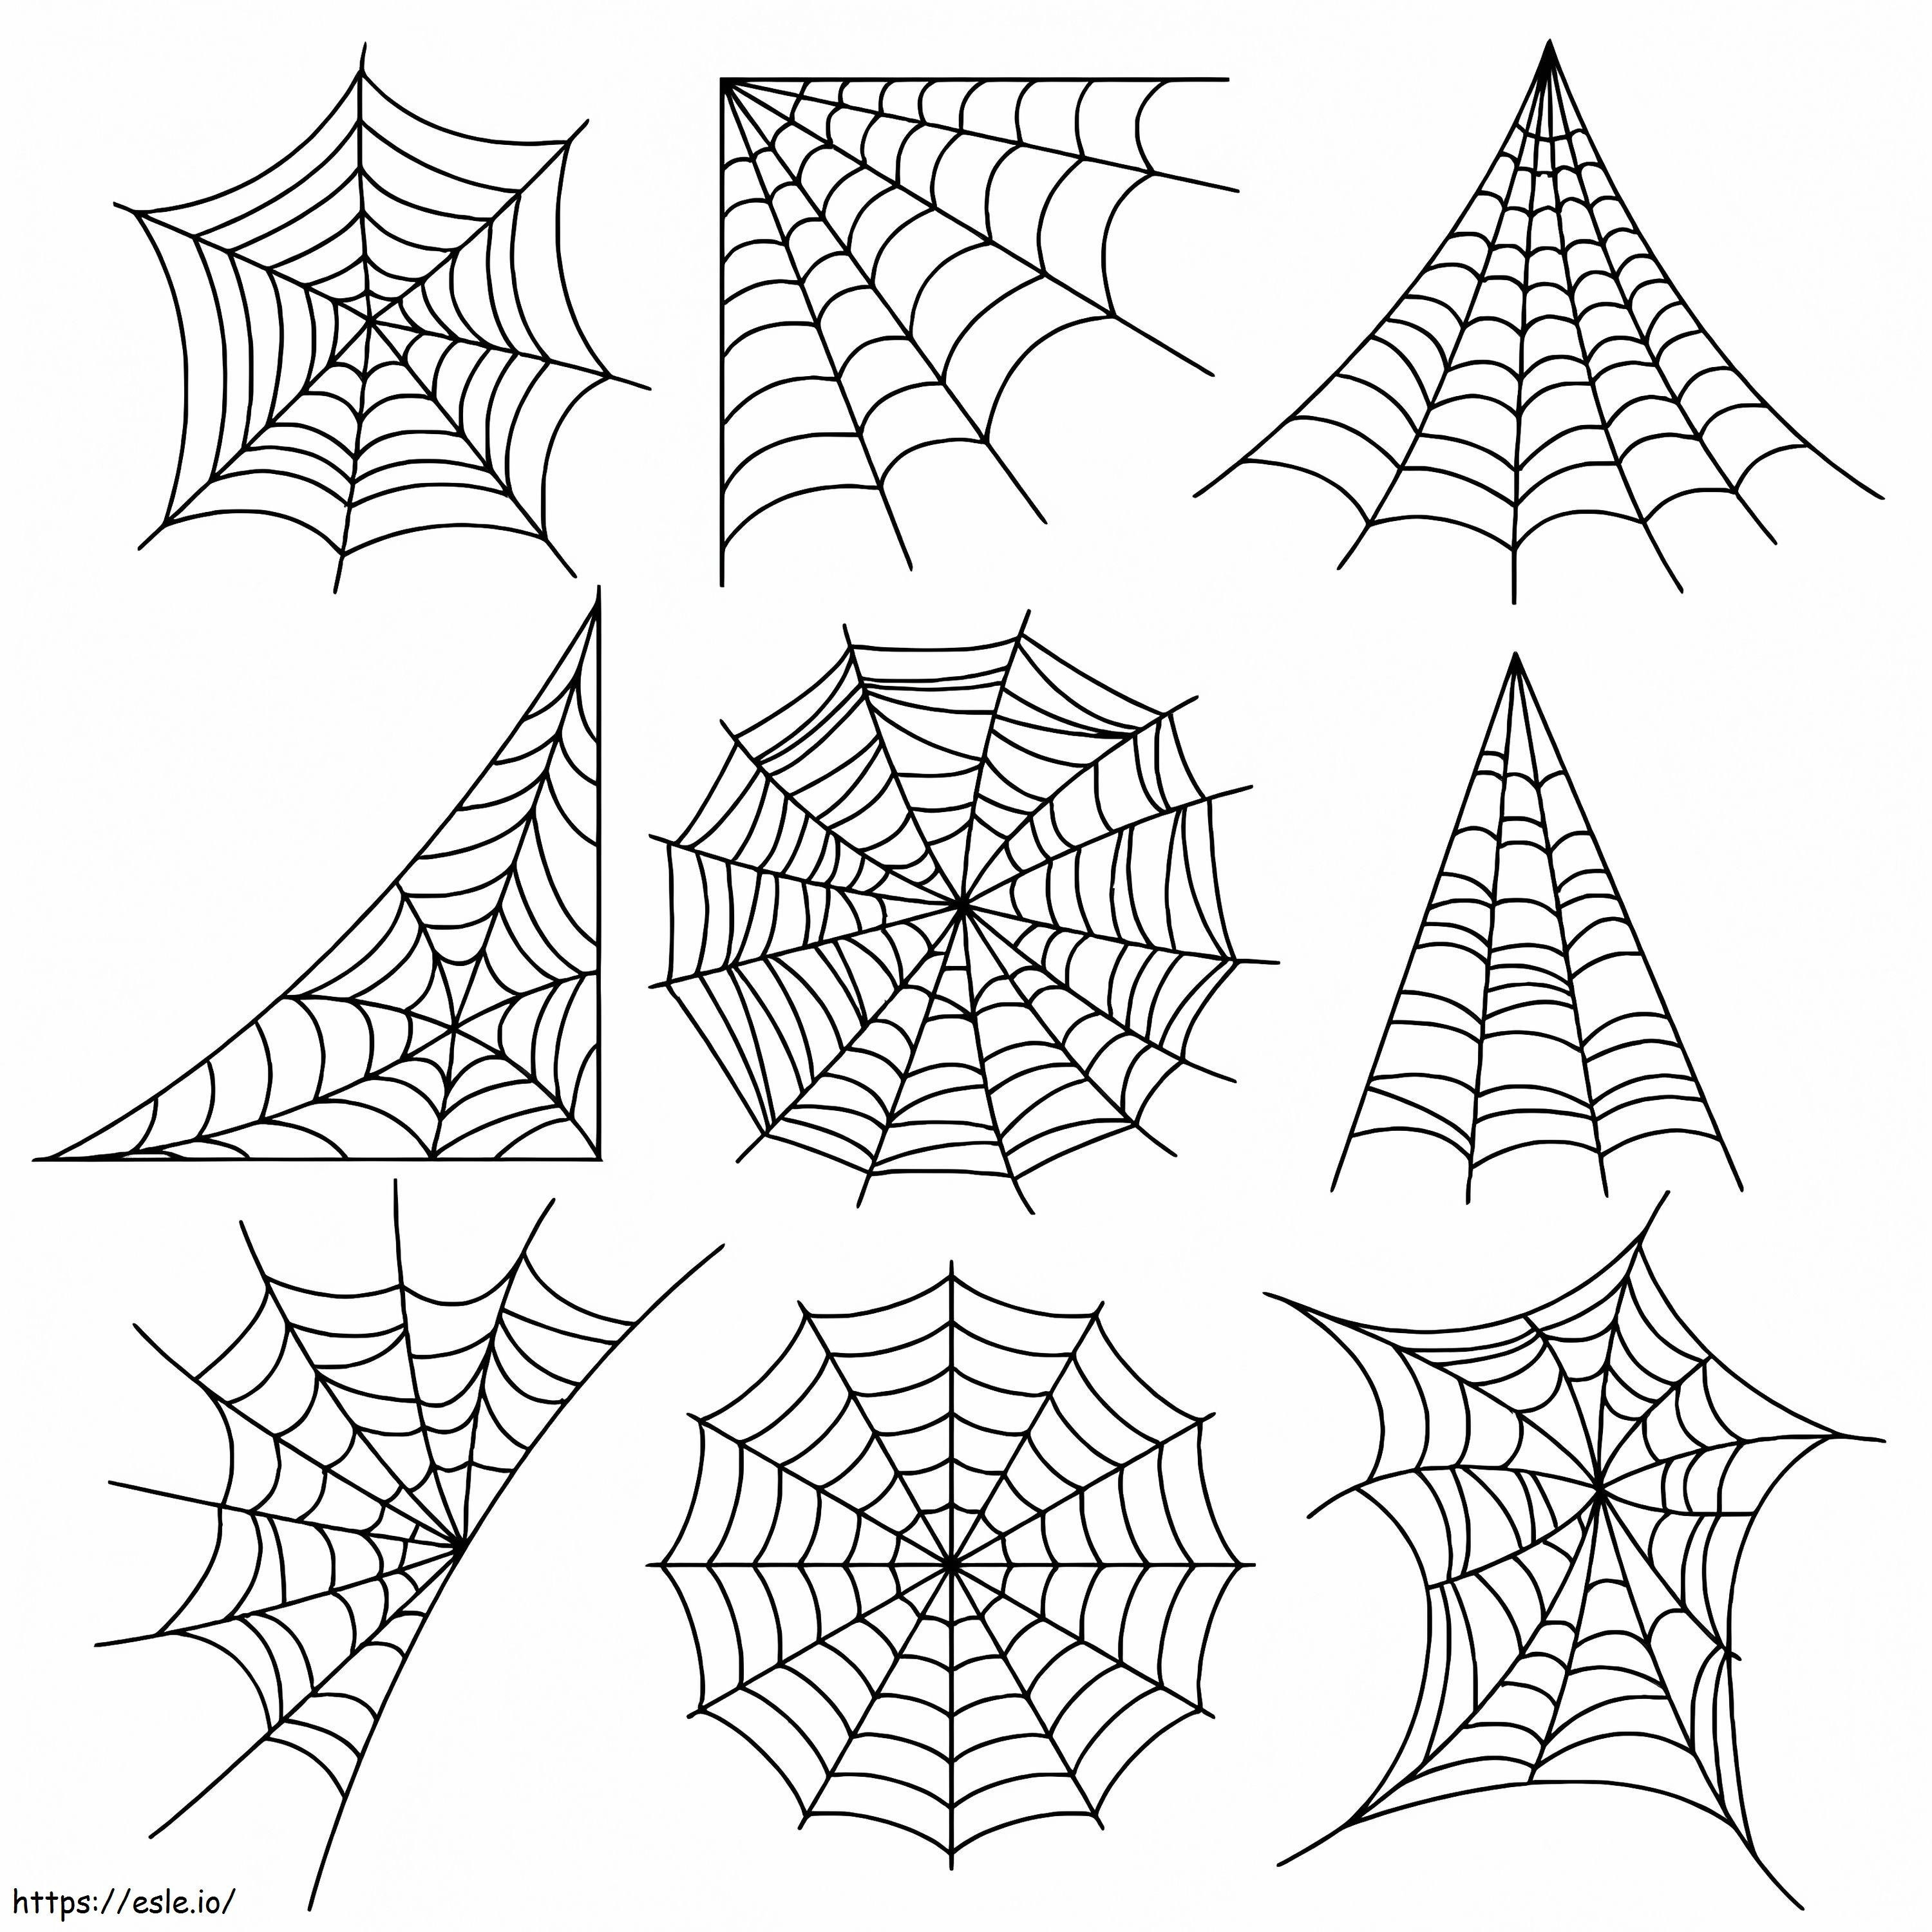 Örümcek ağları boyama